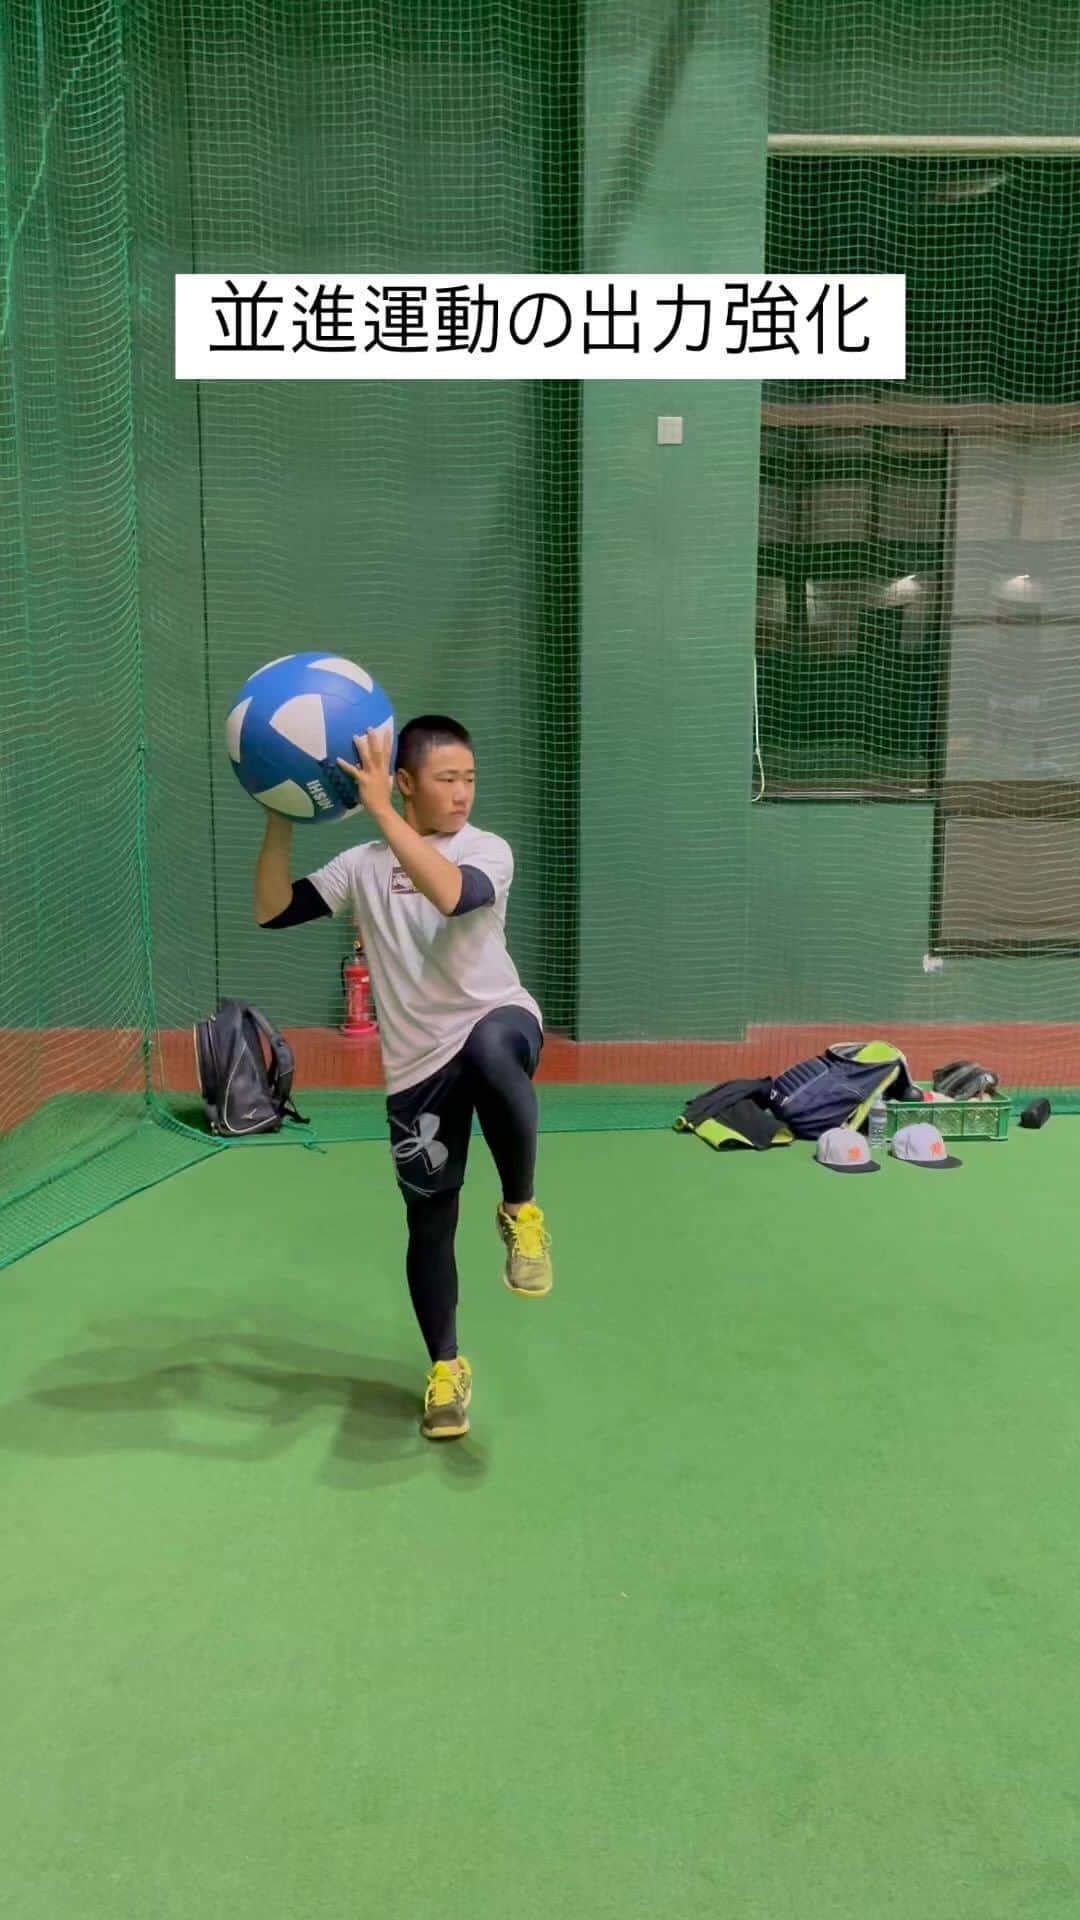 信樂晃史のインスタグラム：「#KATSUKI投球強化アカデミー日向校  メディシンボールを使い並進運動の出力強化 行く動作と戻る動作を同時に行う✨  並進運動をしながらメディシンボールは斜め下に叩きつける。 並進運動する前に叩きつけるイメージだと軸脚に残り過ぎて並進の出力が落ちるので注意⚠️  体験お待ちしております😊  詳細、 無料体験会お問い合わせは プロフィール欄のホームページのお問い合わせにて https://rkatsukiryoji.wixsite.com/e-spear  しっかり投げれることは野球の上達する近道です💪  ーーーーーーーーーーーーーーーーー  元プロ野球選手とスポーツトレーナーが教える 投げることに特化した投球強化アカデミー  体験もお気軽にご参加お待ちしてます！  KATSUKI投球強化アカデミー✨ 新学期にあたり新規会員お待ちしております！  見学や無料体験も開催しておりますのでお気軽にお問い合わせください。  KATSUKI投球強化アカデミー熊本校  KATSUKI投球強化アカデミー久留米校  KATSUKI投球強化アカデミー宮崎校  KATSUKI投球強化アカデミー浦和校  #KATSUKI投球強化アカデミー #投手を育てたい #投手 #ピッチャー #投球 #プロ野球選手 #千葉ロッテ #近鉄 #オリックス #ジャイアンツ #柳川高校 #甲子園 #野球好き #野球少女 #野球少年」